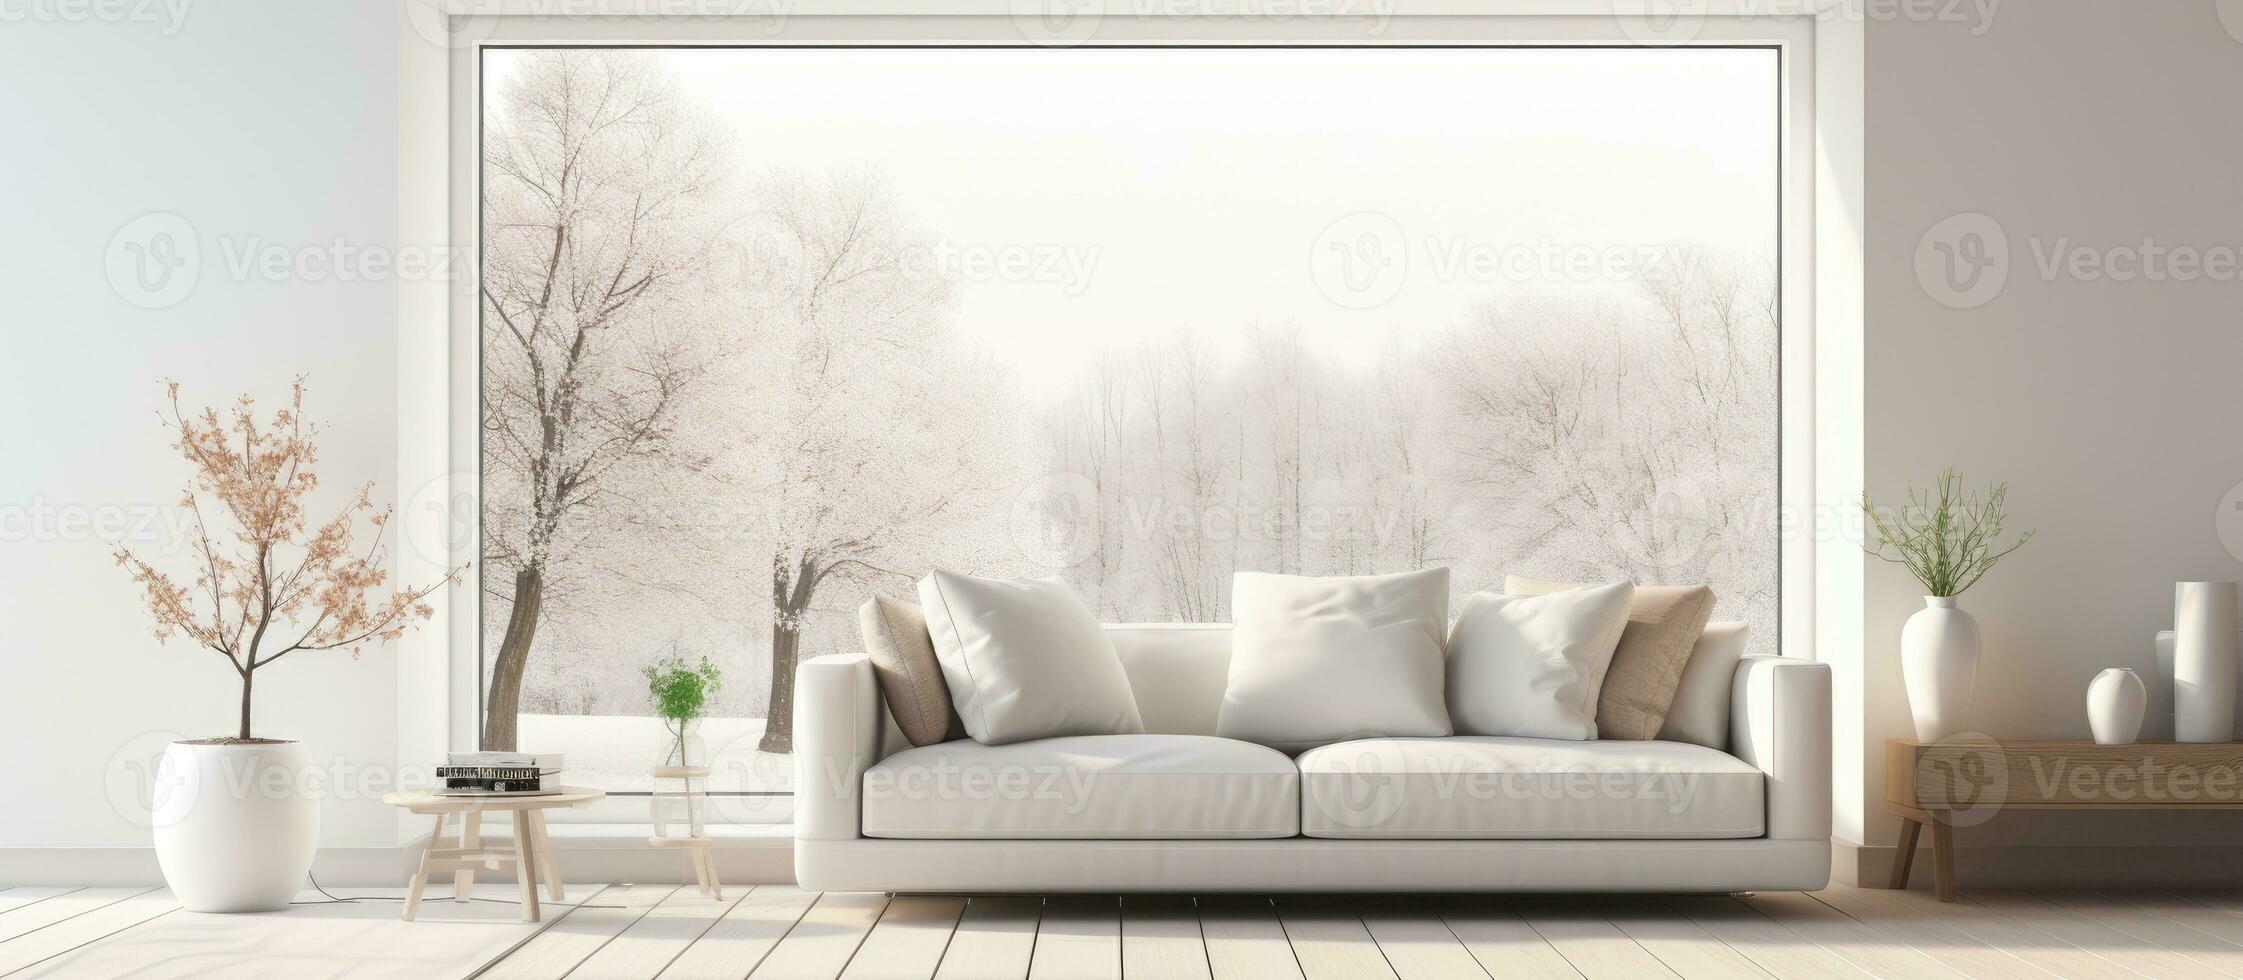 blanc scandinave vivant pièce intérieur avec canapé sol des vases mur décor et une nordique paysage vu de le les fenêtres illustration photo